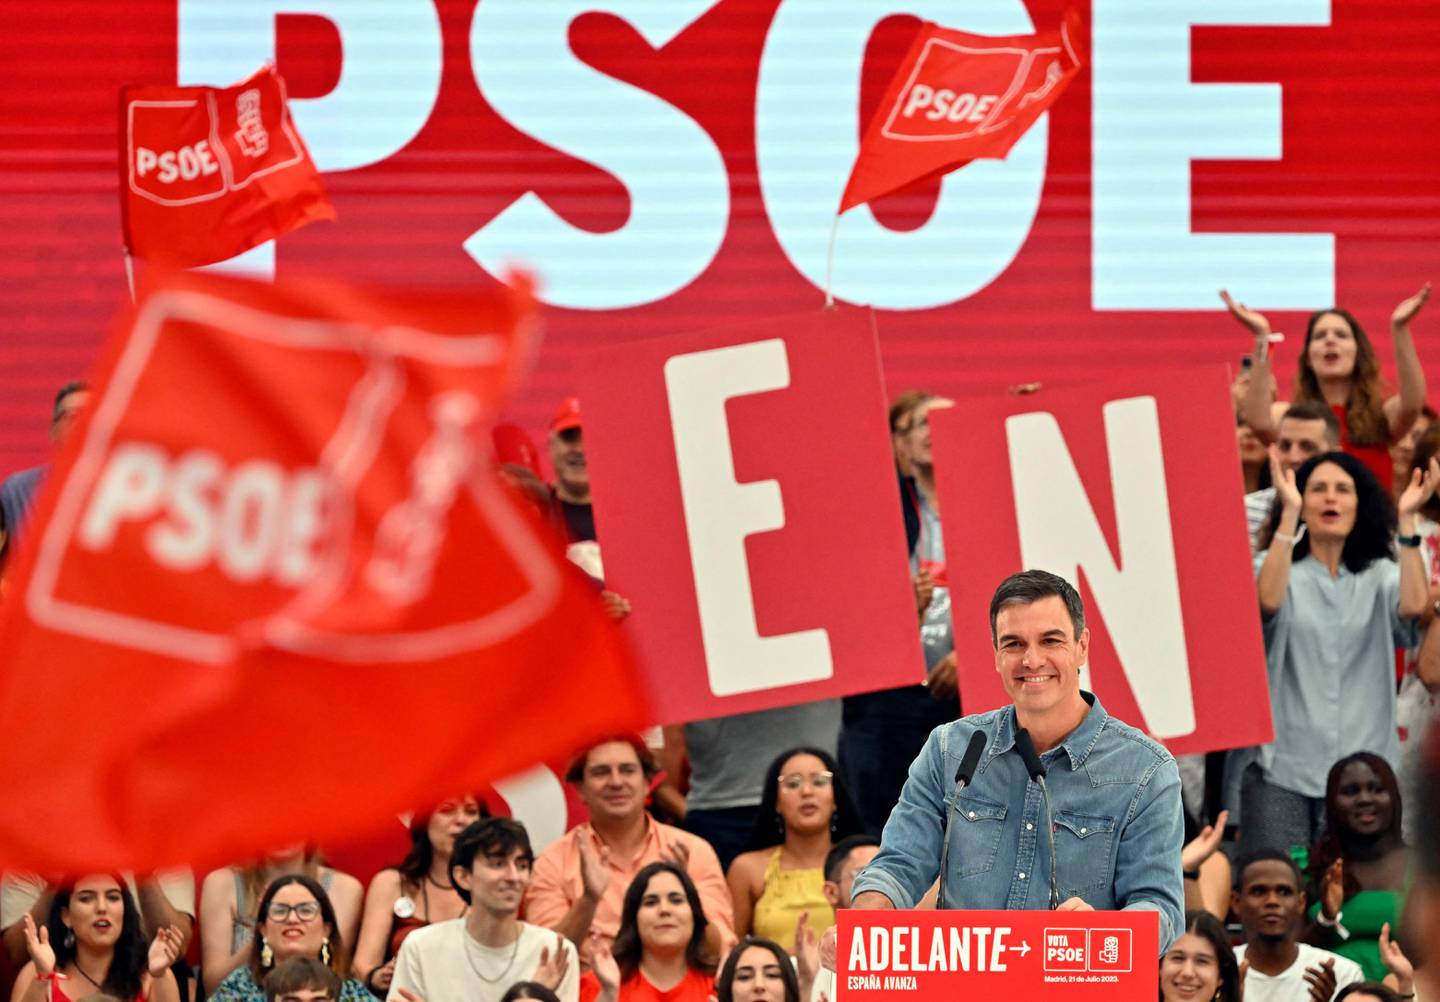 Den sittende statsministeren og lederen av det spanske sosialistpartiet (PSOE), Pedro Sanchez, skrev ut nyvalg tidligere i år. I dag blir det avgjort om han får fortsette som statsminister, eller må gi makten til høyresiden.